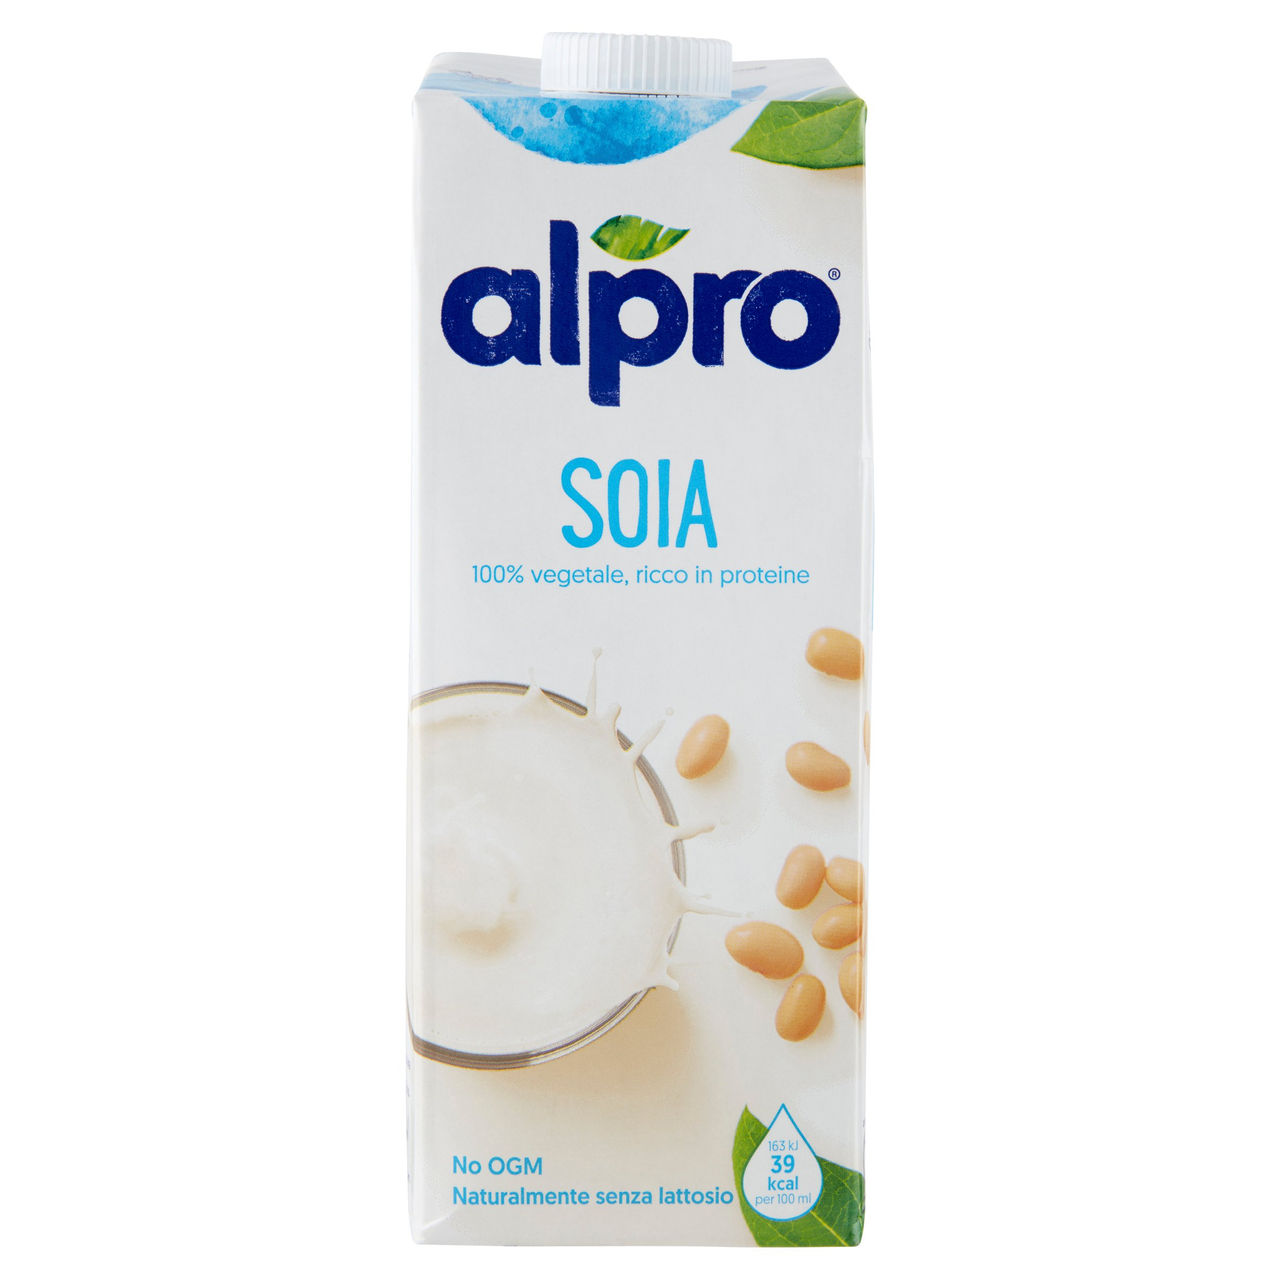 alpro Soia Classico, Bevanda alla Soia 100% vegetale con vitamine B2, B12 e D 1 Litro